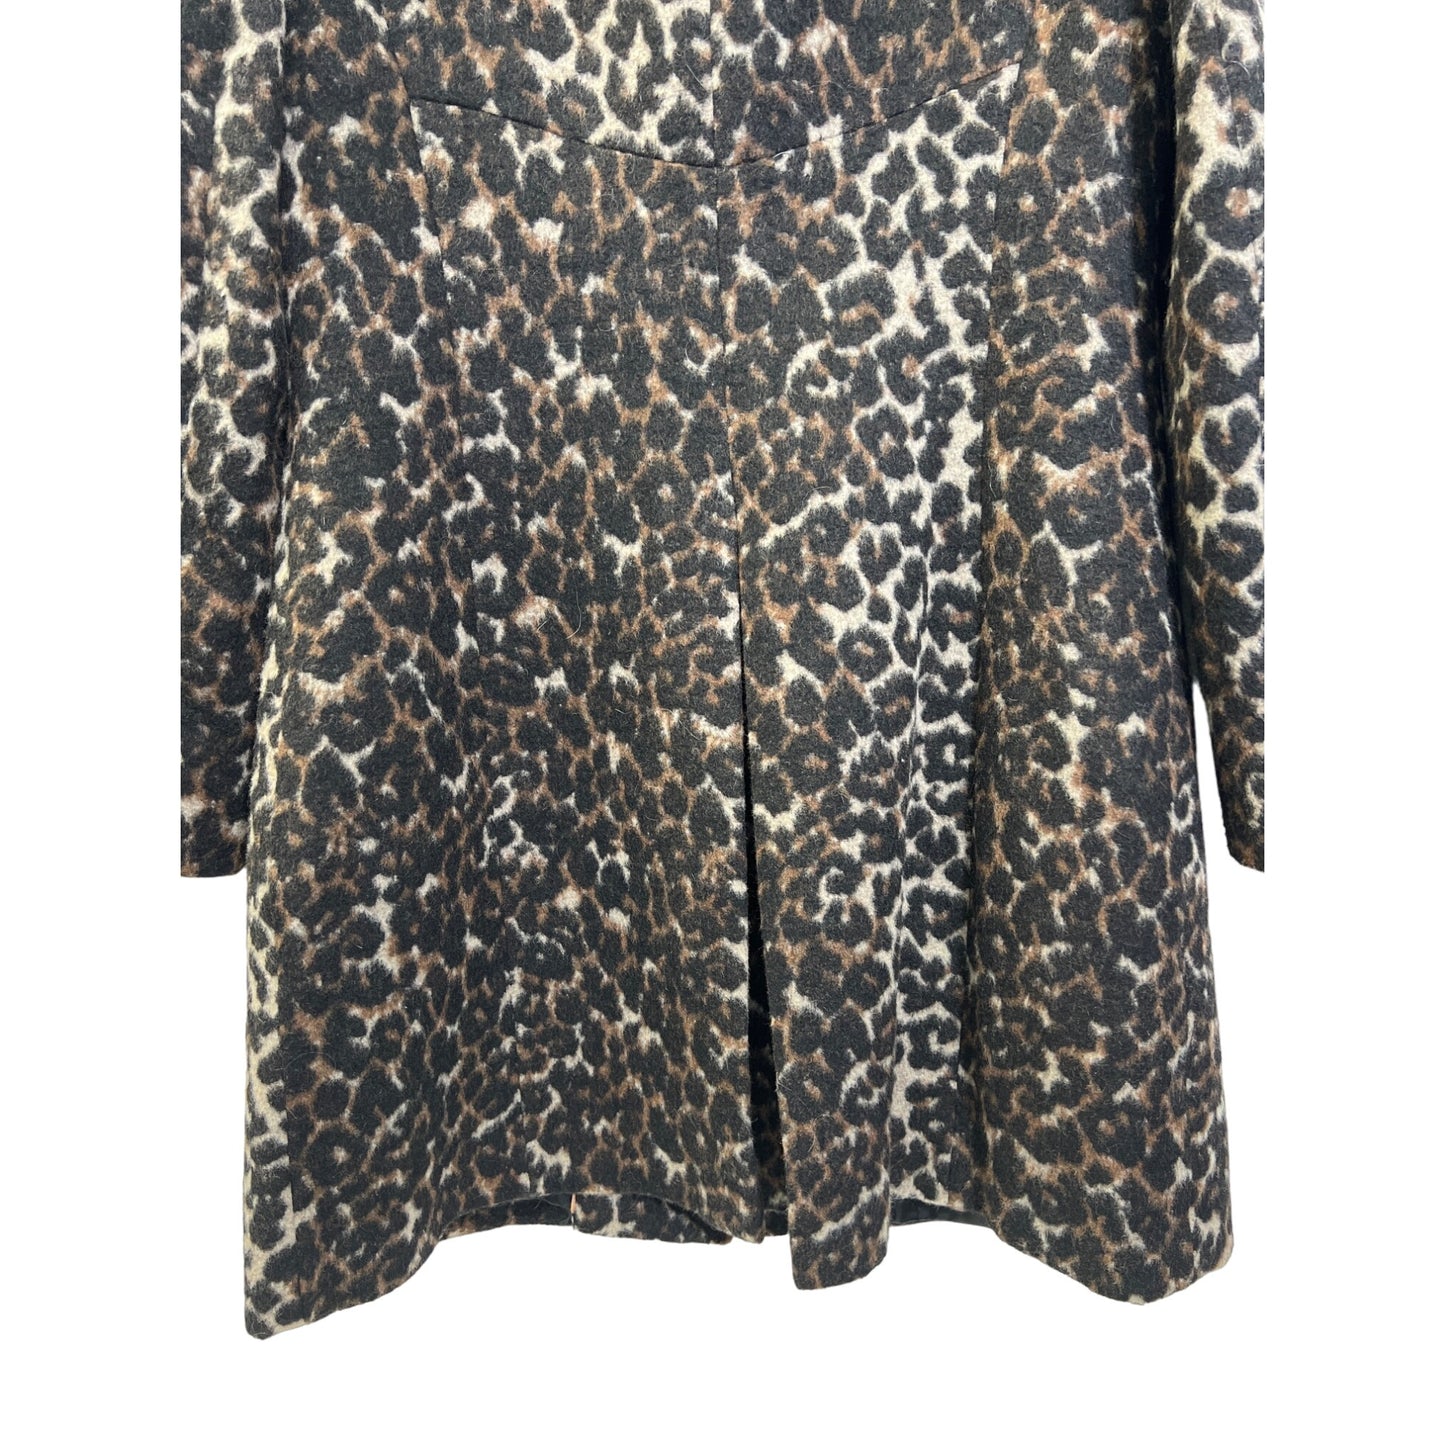 Via Spiga Stand Collar Wine Leopard Wool Blend Overcoat